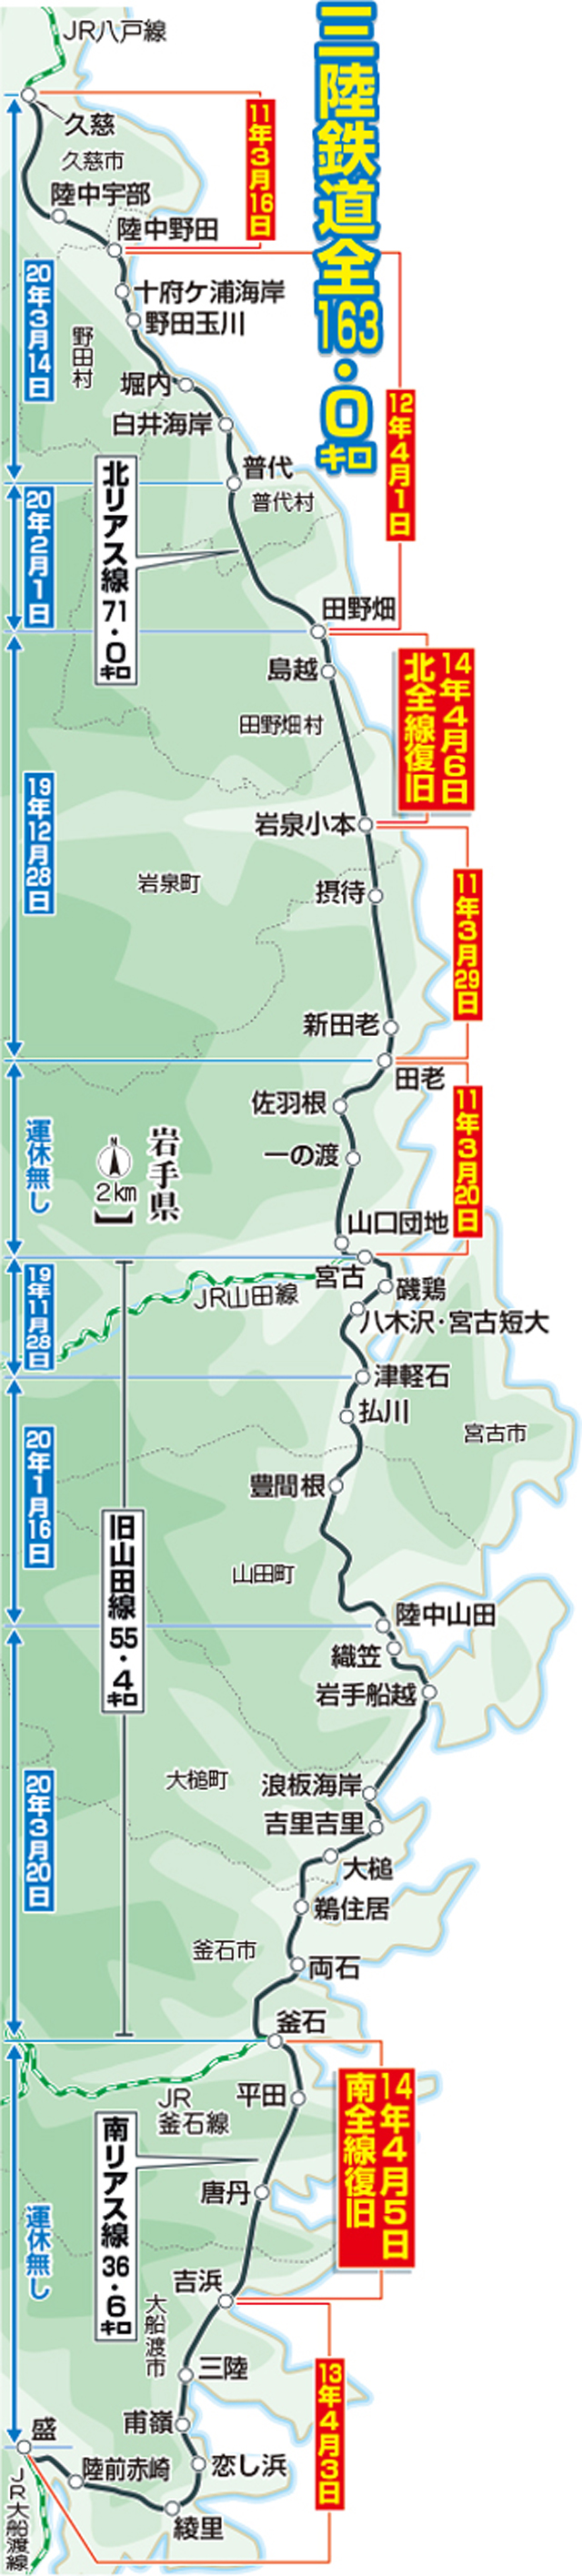 三陸鉄道の復旧日。赤は東日本大震災、青は19年台風15号からの復旧